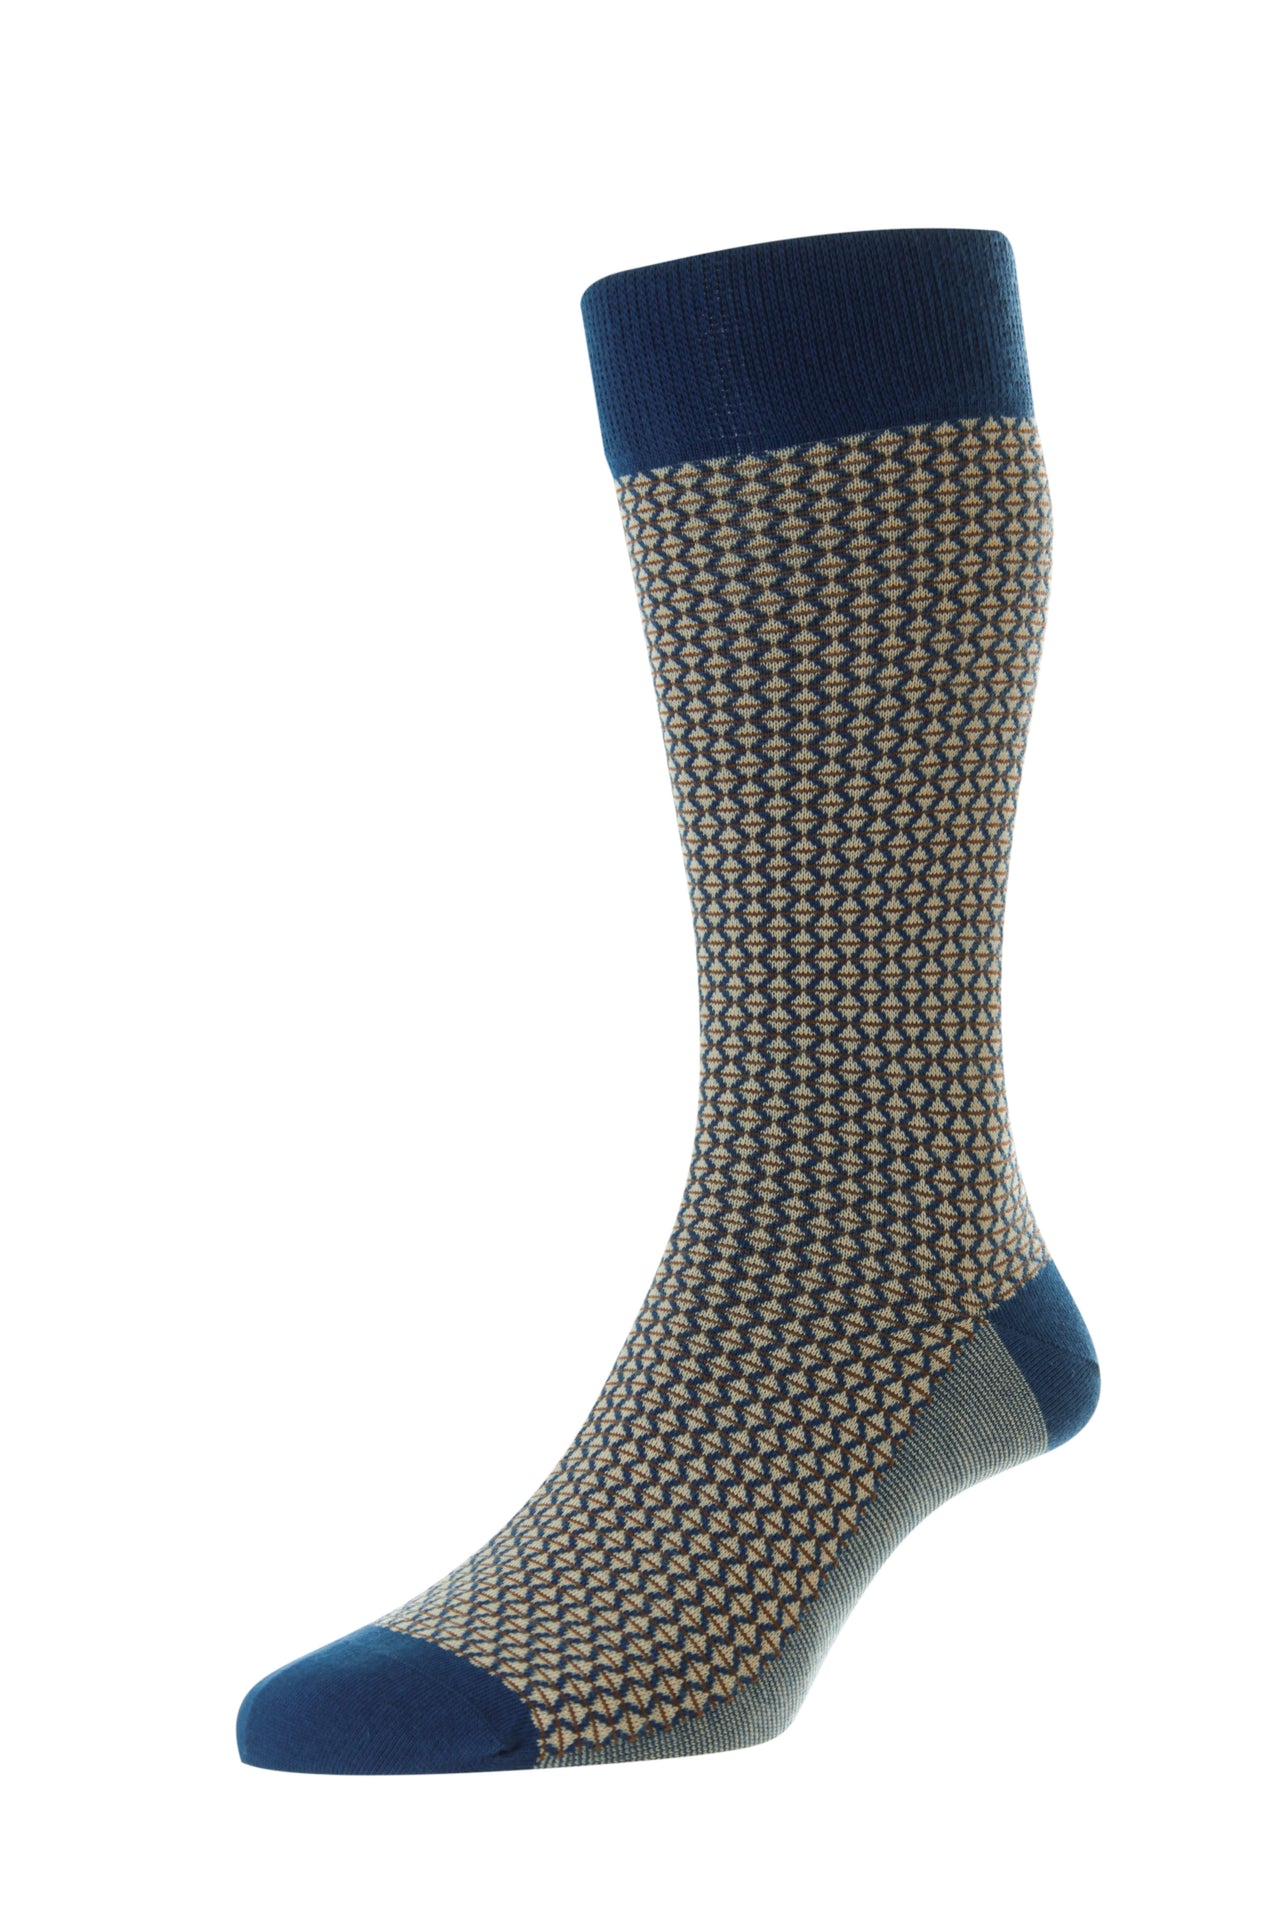 PANTHERELLA Elgar Comfort Top Socks BLUE